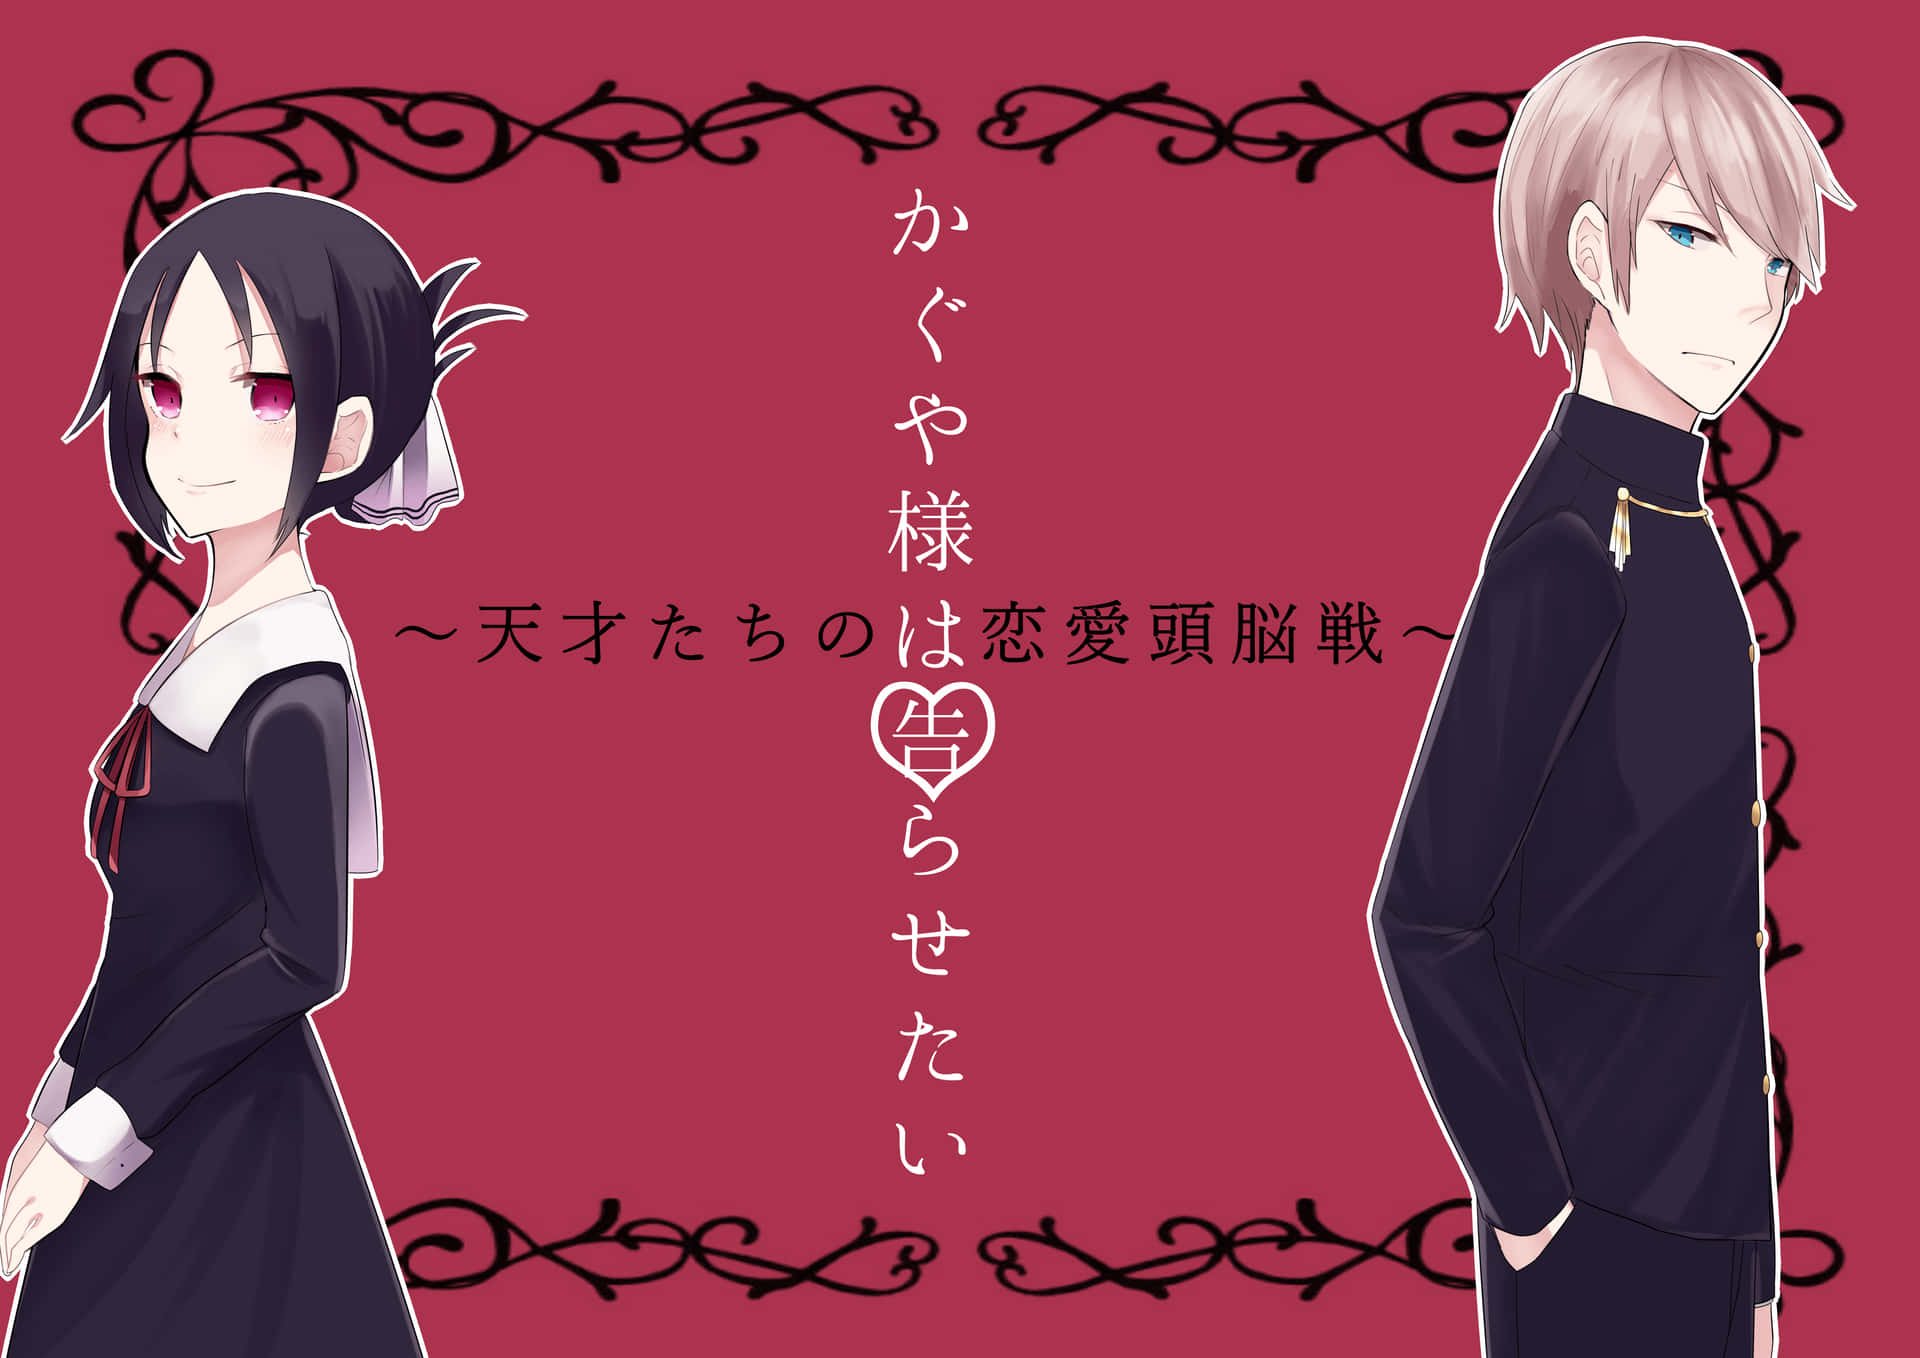 Anime : Love Is War. Character : Kaguya Shinomiya : r/AnimesPfp